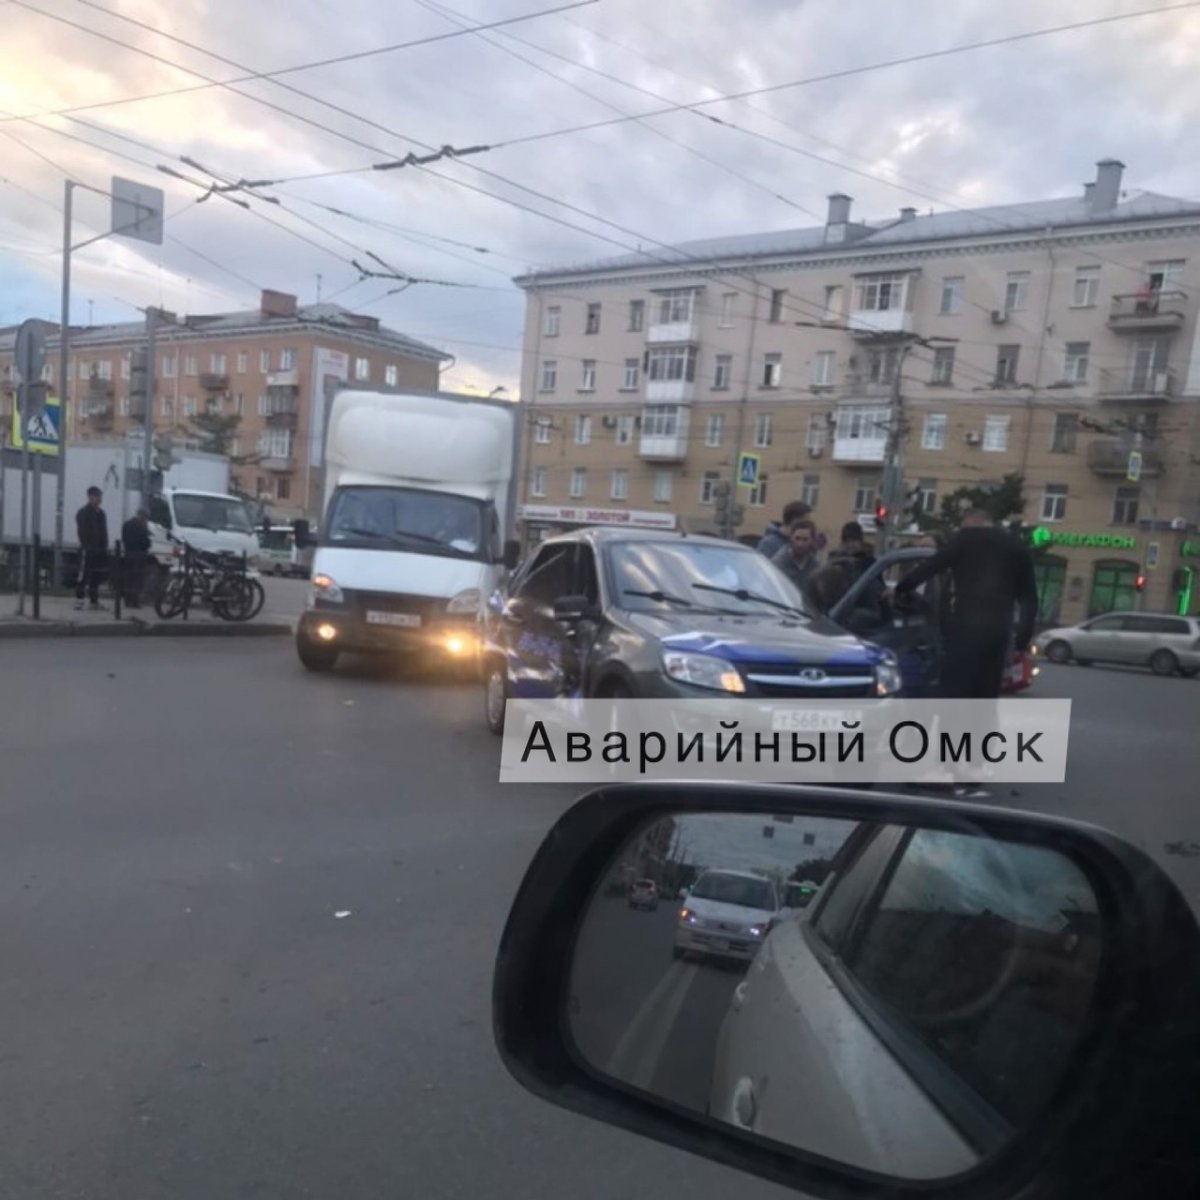 Опасный Омск авария на Омской улице вчера 25 июня